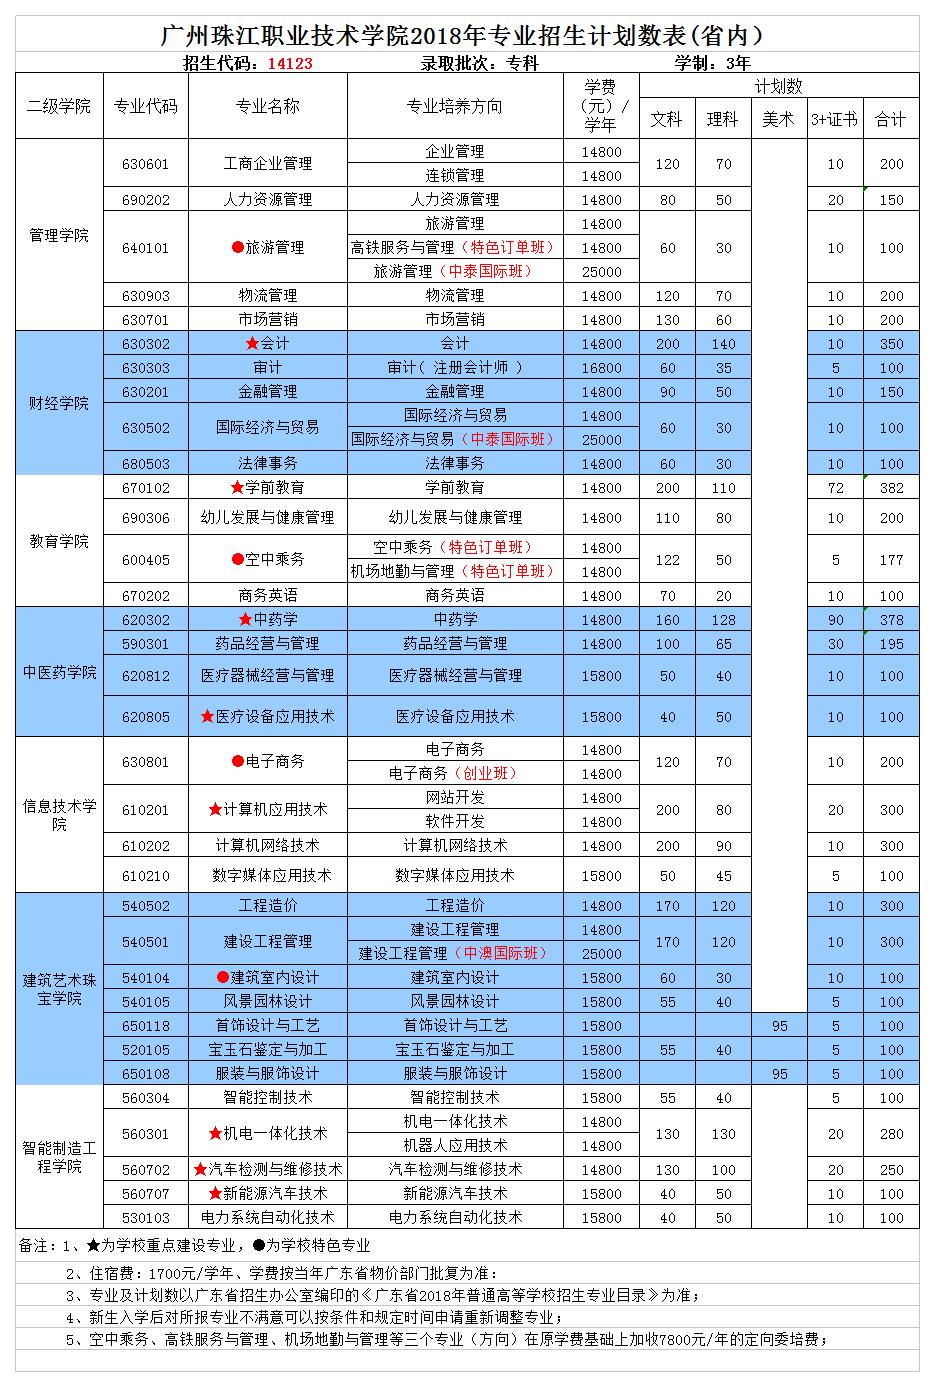 广州珠江职业技术学院2018年专业计划一览表.jpg